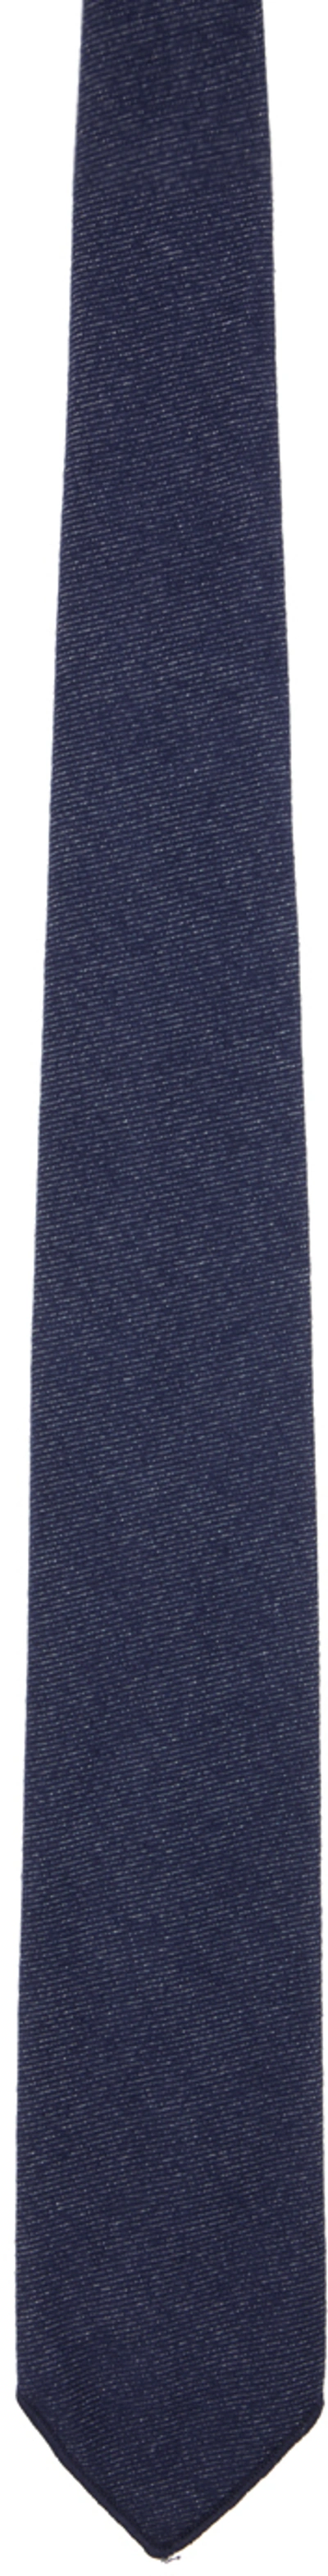 Engineered Garments Navy Cotton Tie In Sd004 Indigo Cotton